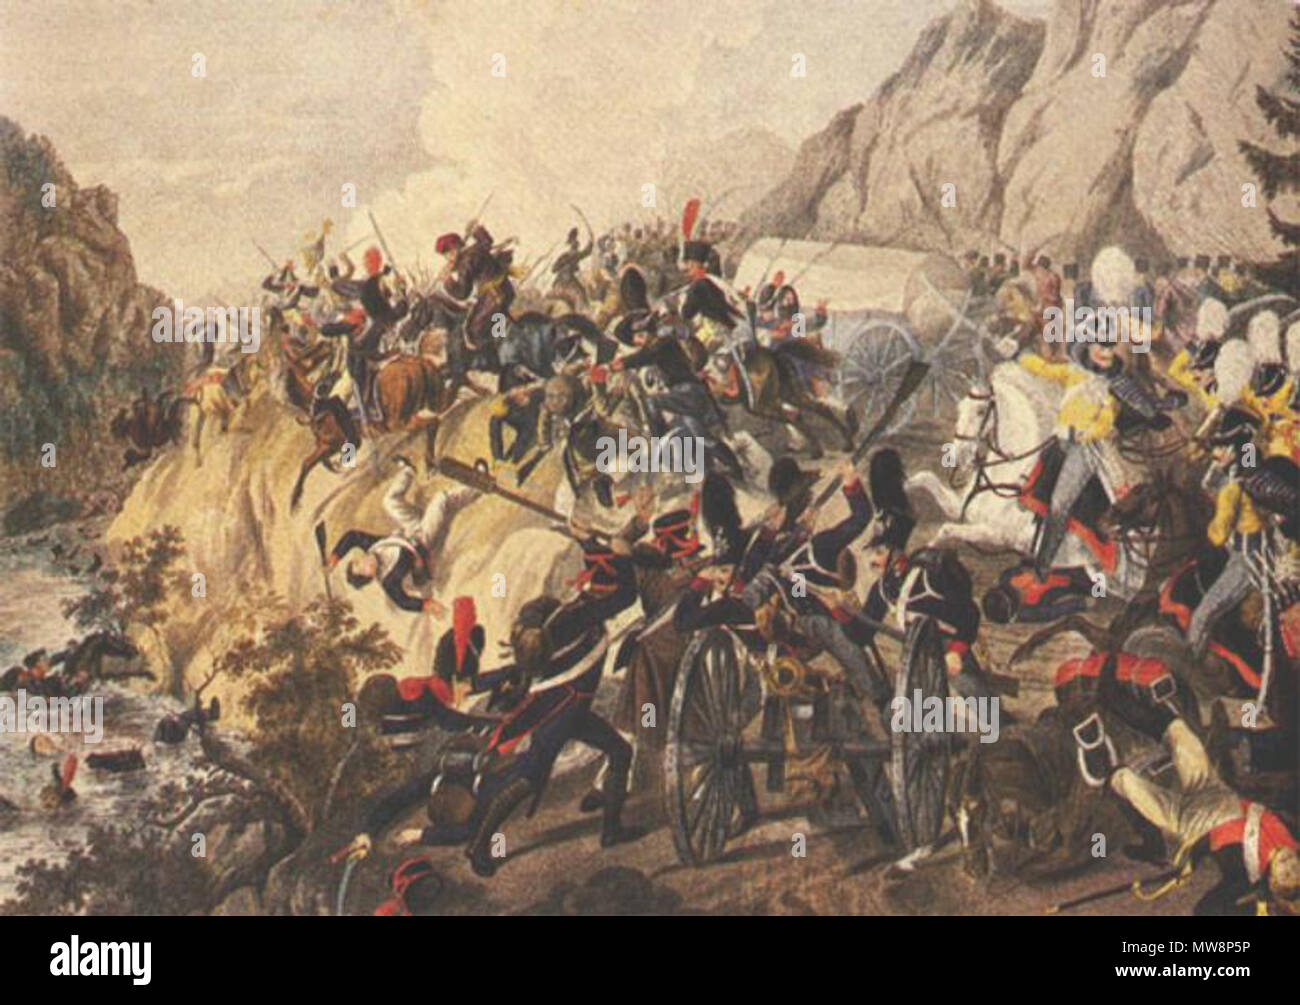 . Battaglia di Katzbach (1813). Soldati prussiani vigore le truppe francesi nel fiume Katzbach. prima del 1825. disegnata da A. Barch dopo originale del I. Klein 75 Battaglia di Katzbach da Klein Foto Stock